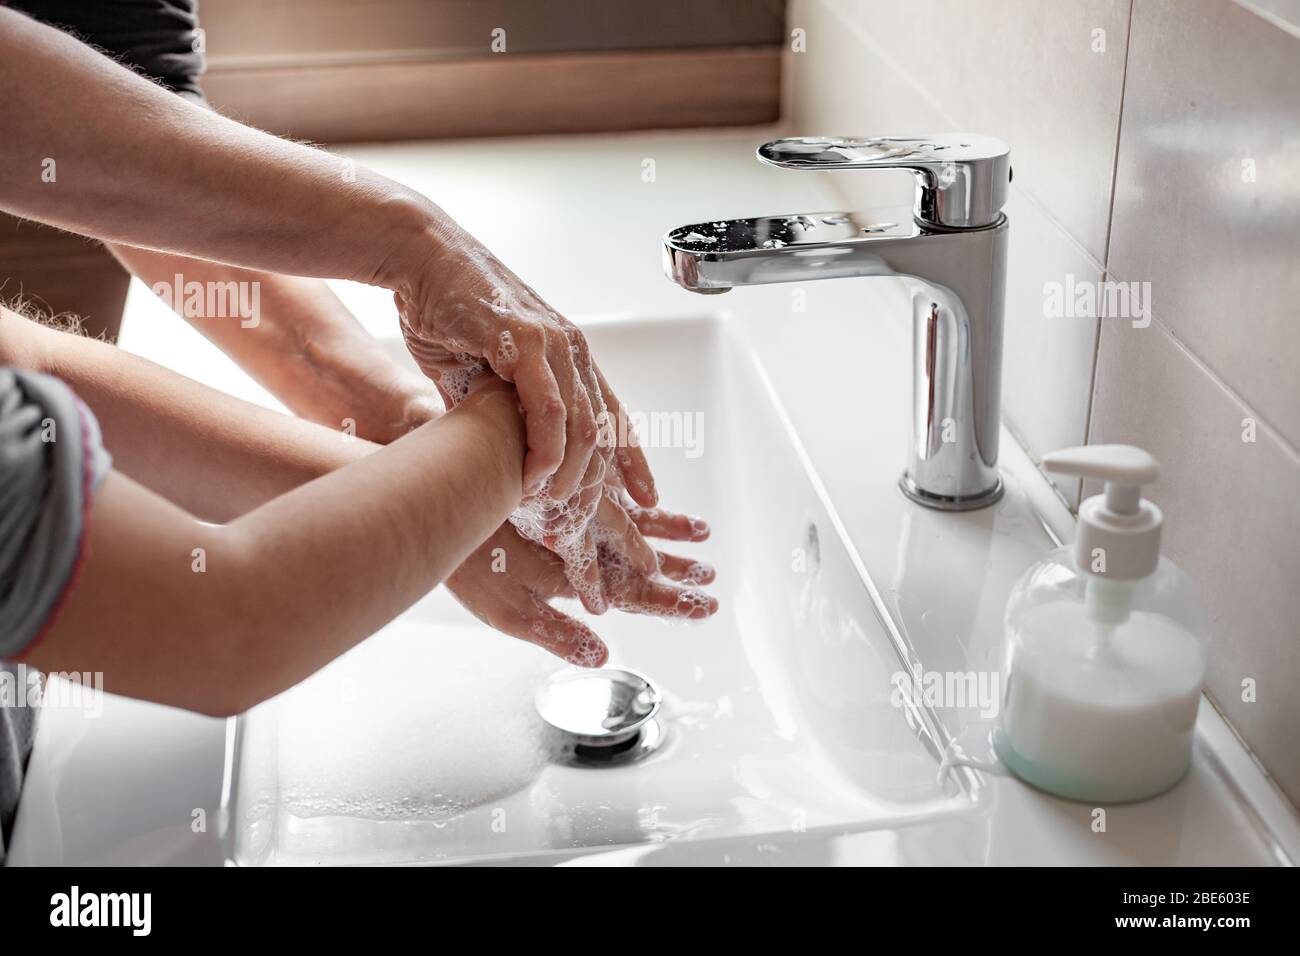 Mère enseignant à sa fille comment se laver correctement les mains avec du savon pour prévenir l'infection du coronavirus Banque D'Images